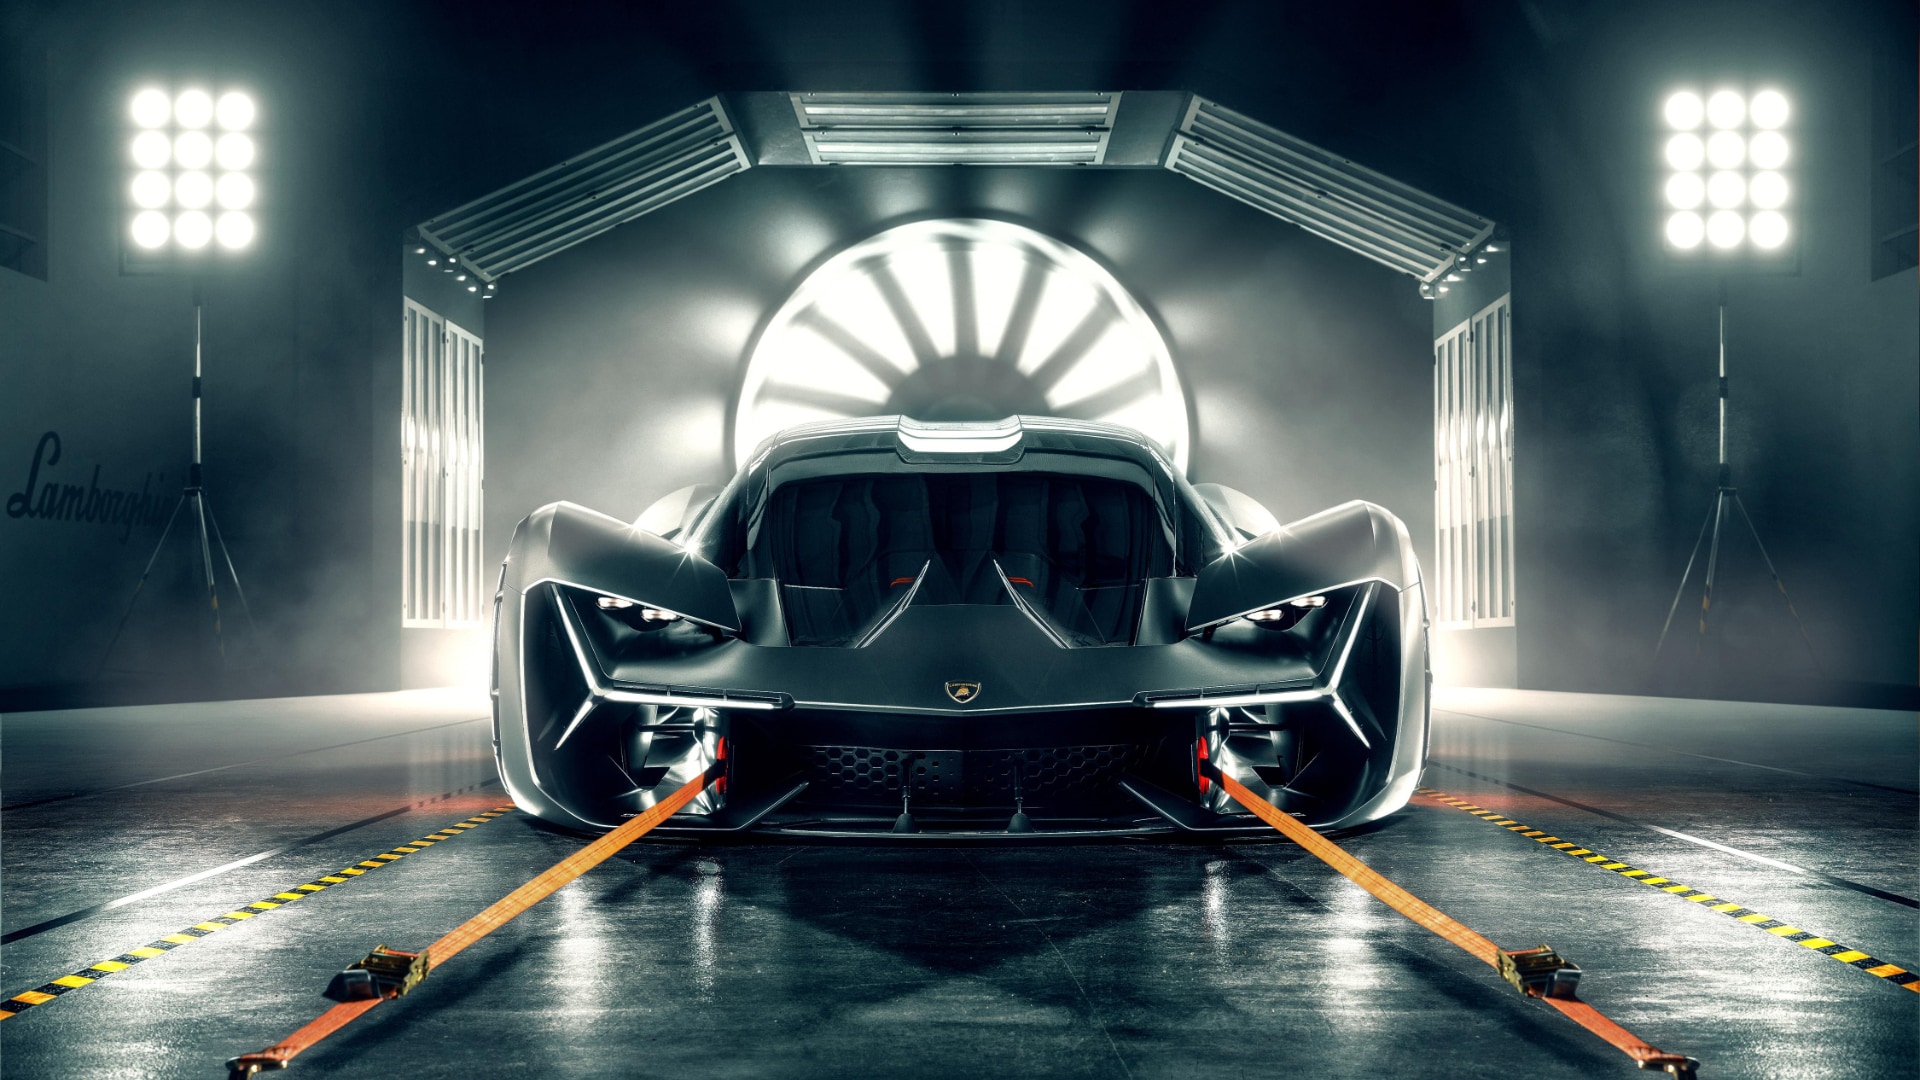 Chiêm ngưỡng bản concept Terzo Millennio – siêu xe tương lai từ Lamborghini